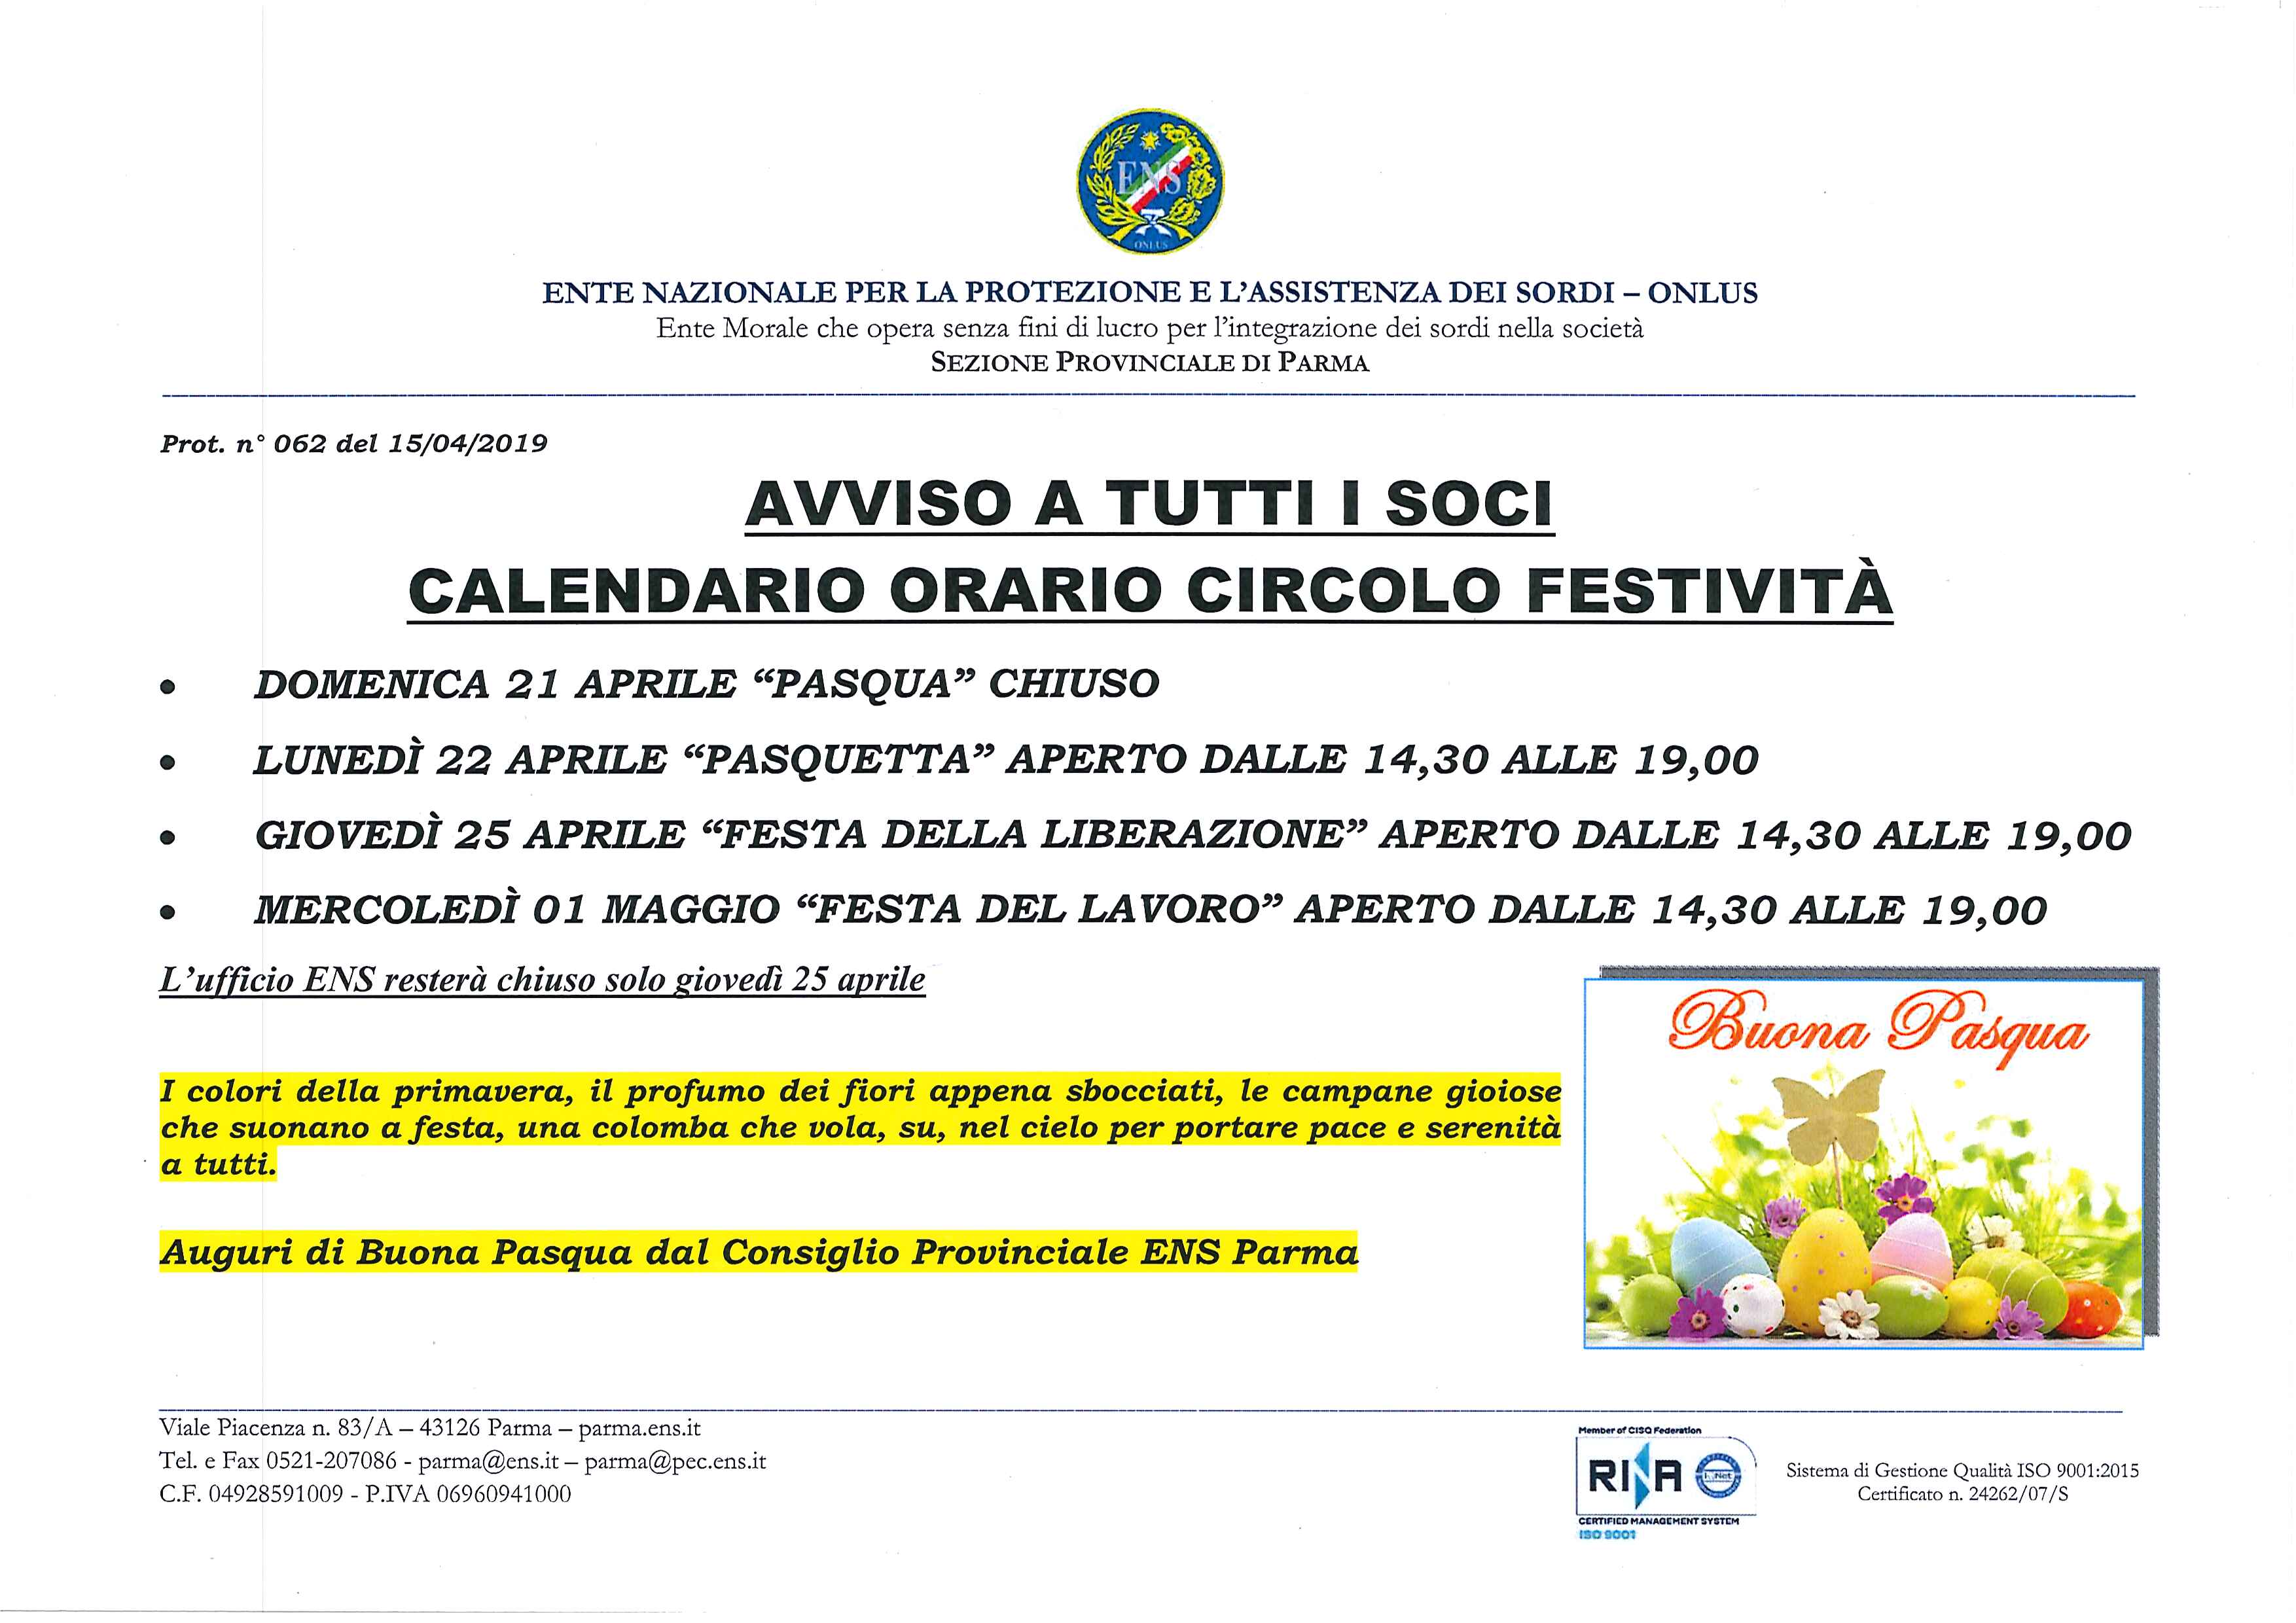 Prot. 062 Orari Ufficio e Circolo Festività Aprile-Maggio 2019.jpg